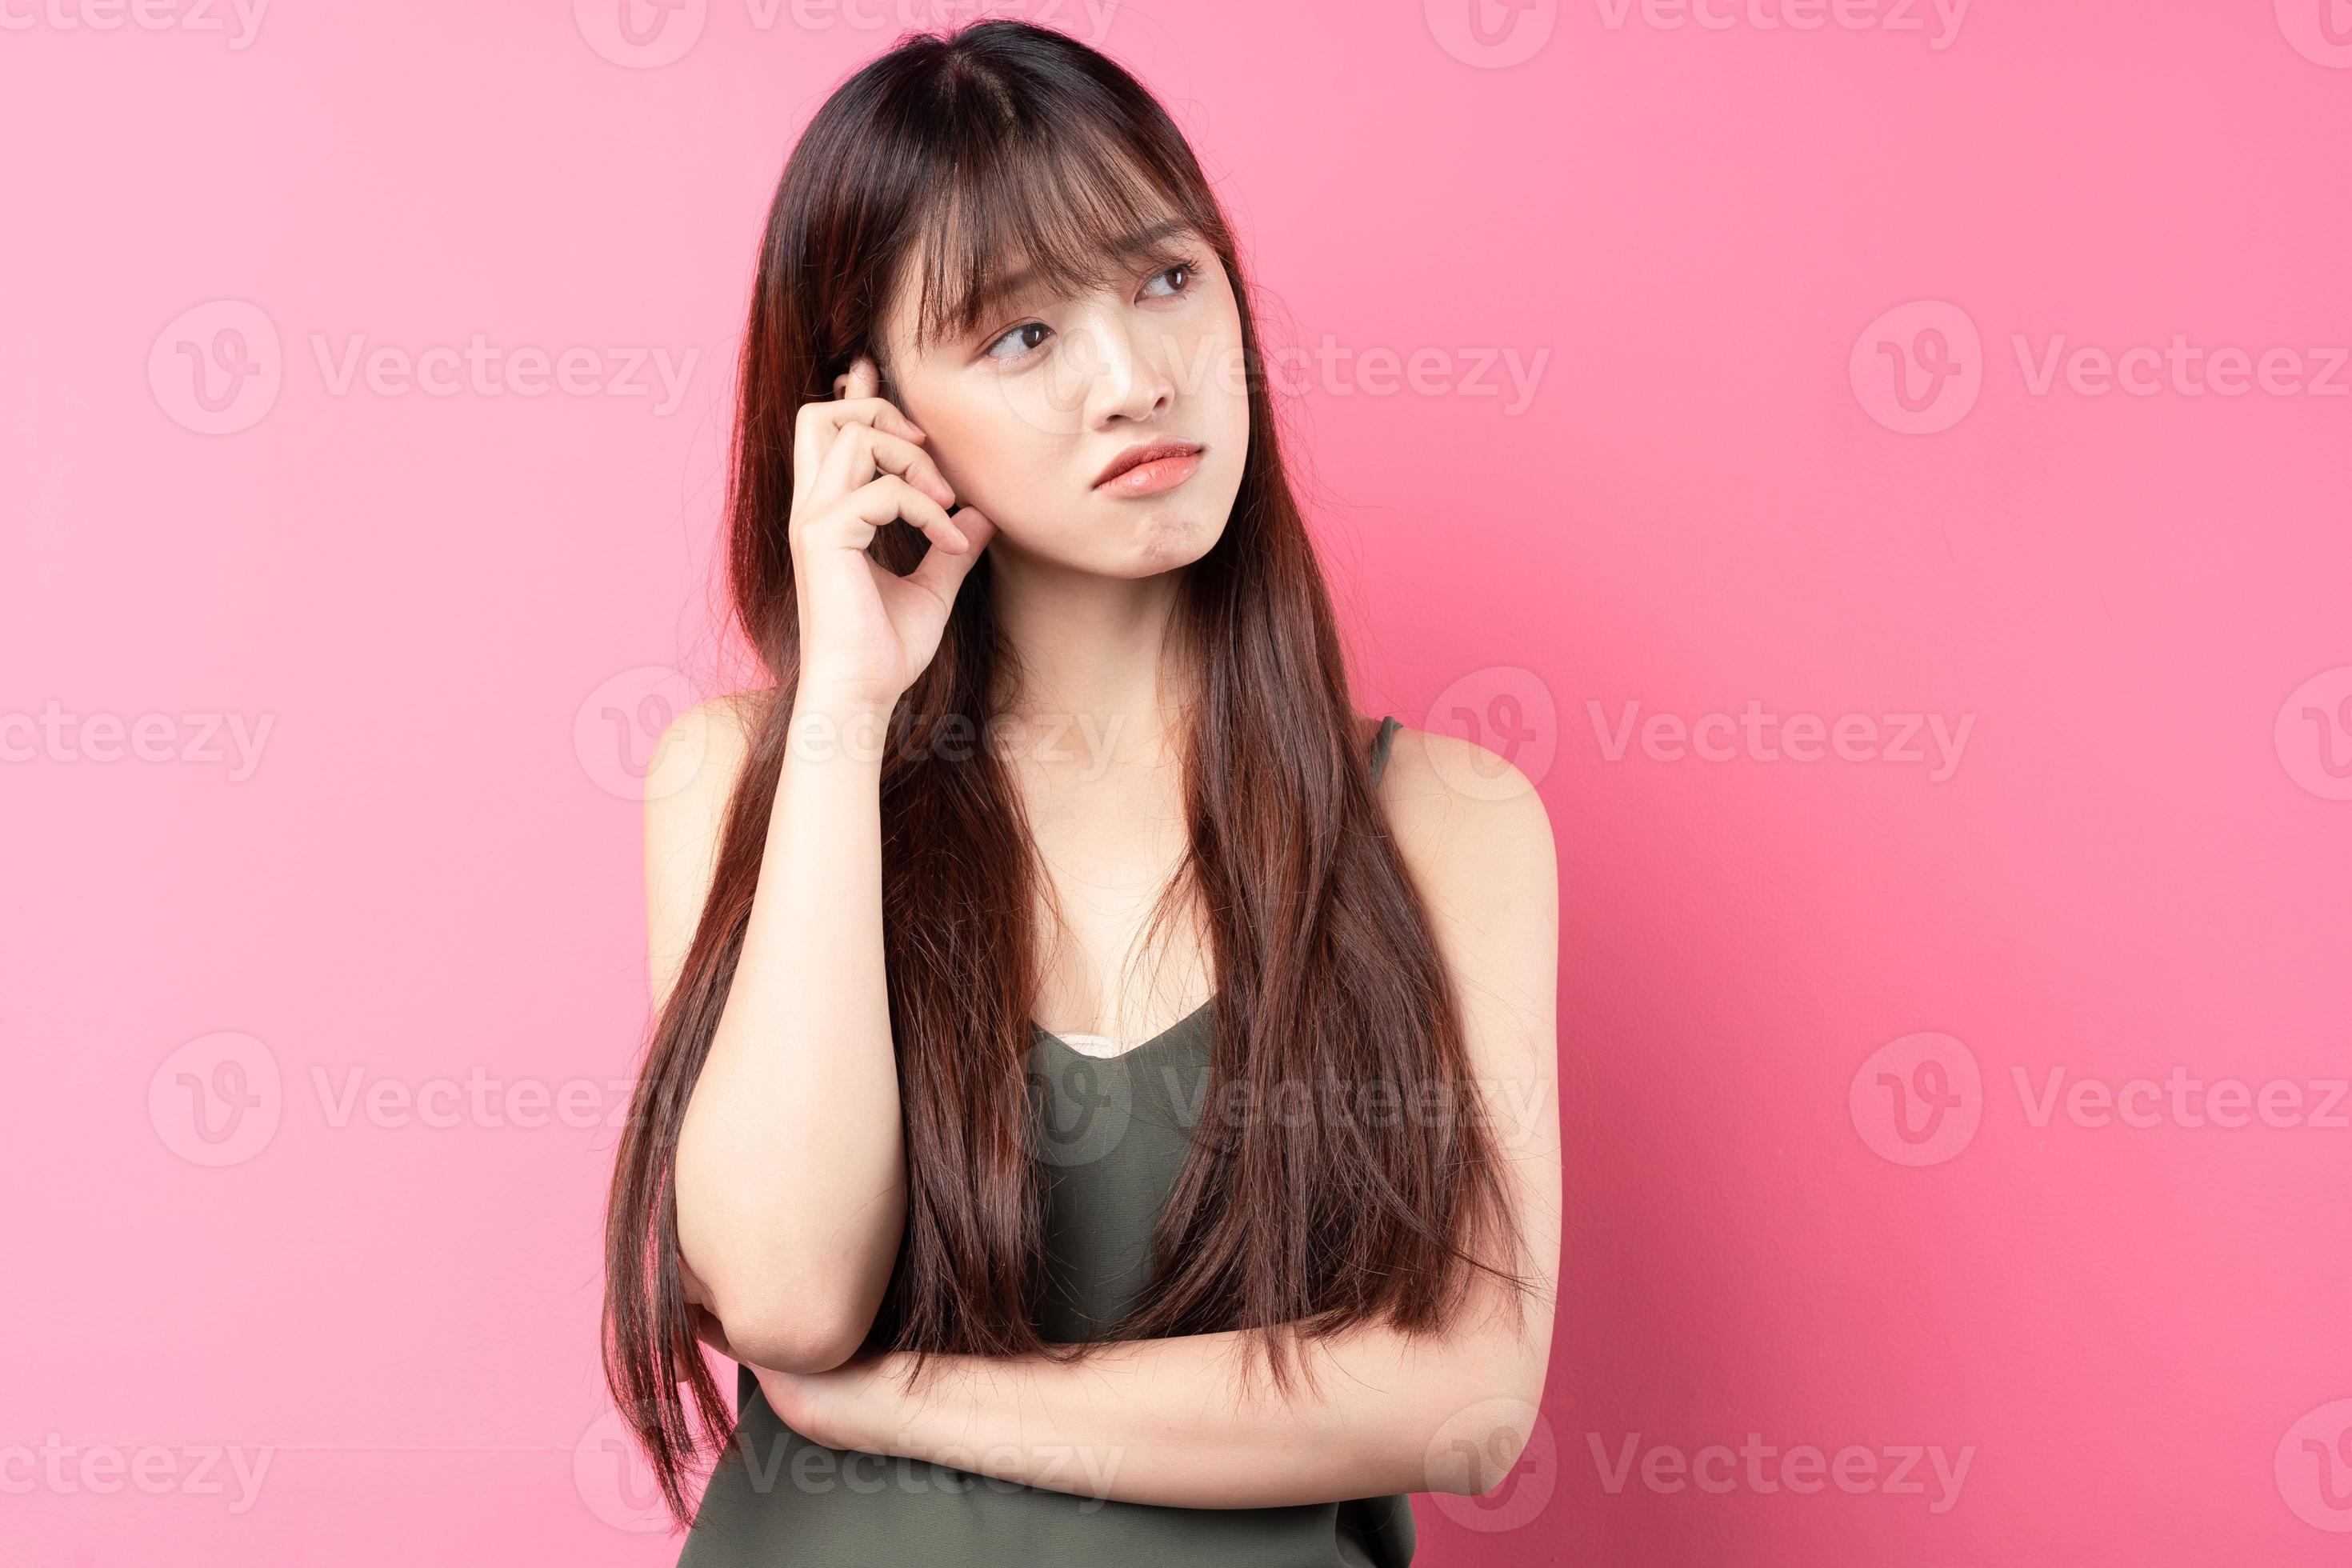 jeune fille asiatique posant sur un fond rose photo